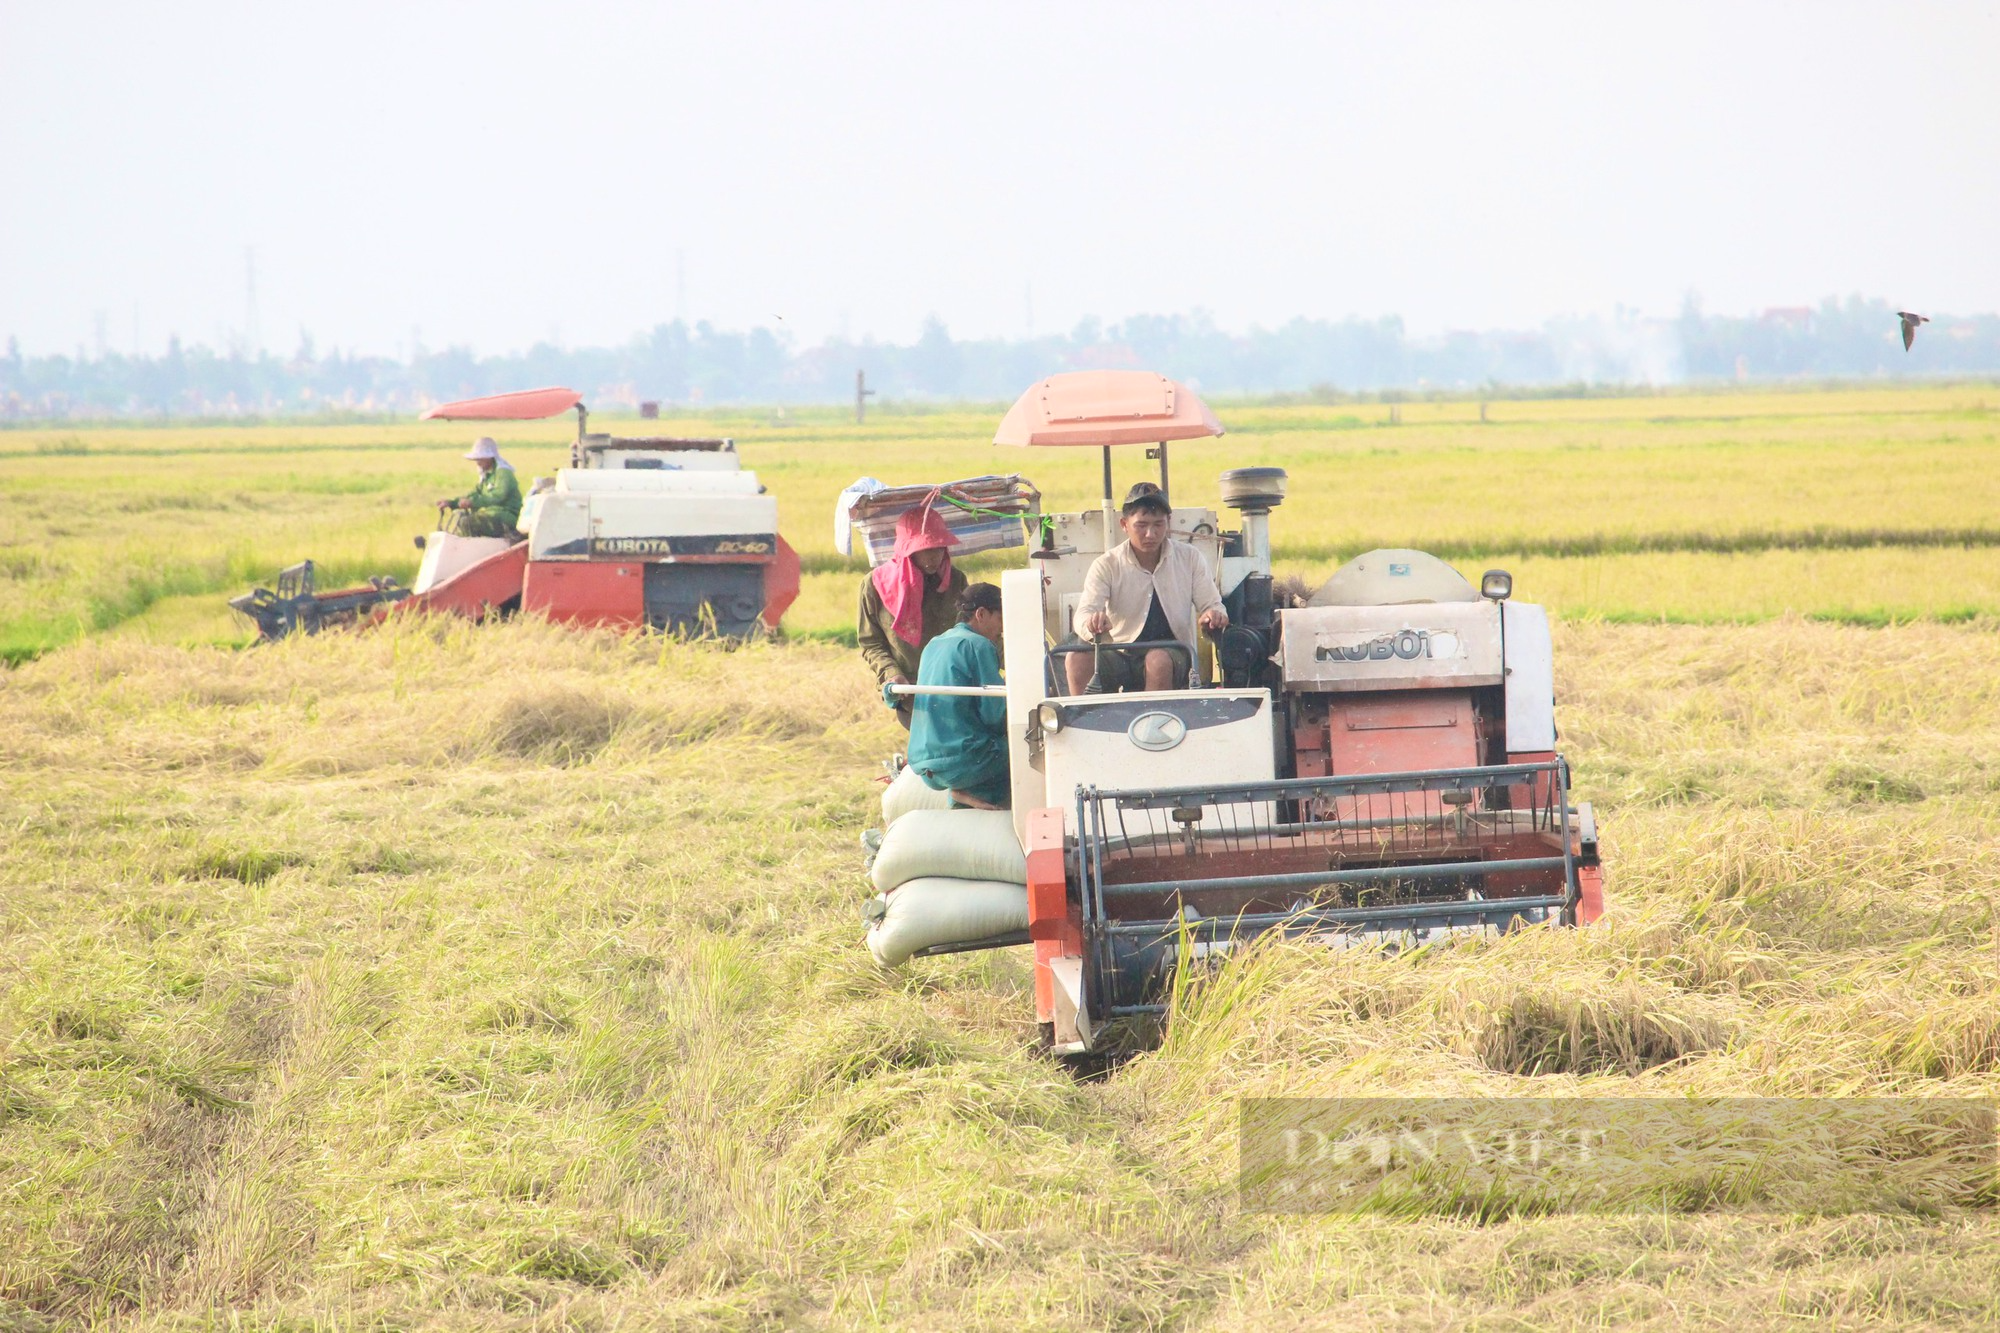 Quảng Bình: Công ty sông Gianh đồng hành cùng nông dân trồng lúa, giông lốc làm ngã rạp liền tới giúp gặt, thu mua luôn - Ảnh 4.